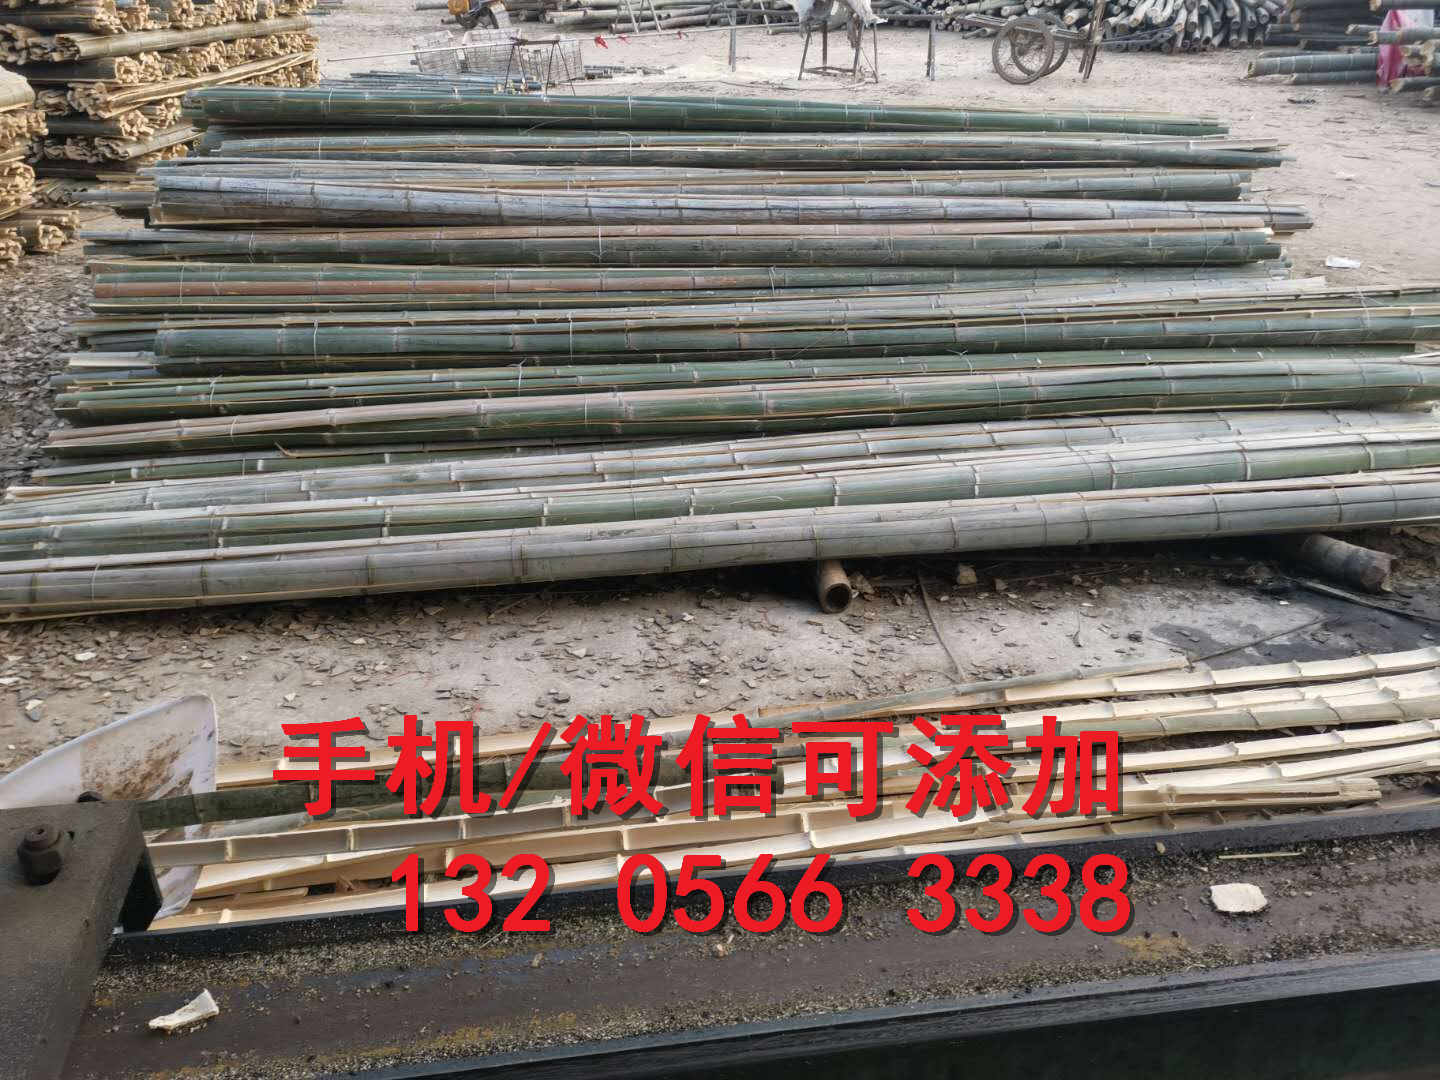 安徽芜湖碳化防腐木木栅栏竹篱笆竹子护栏